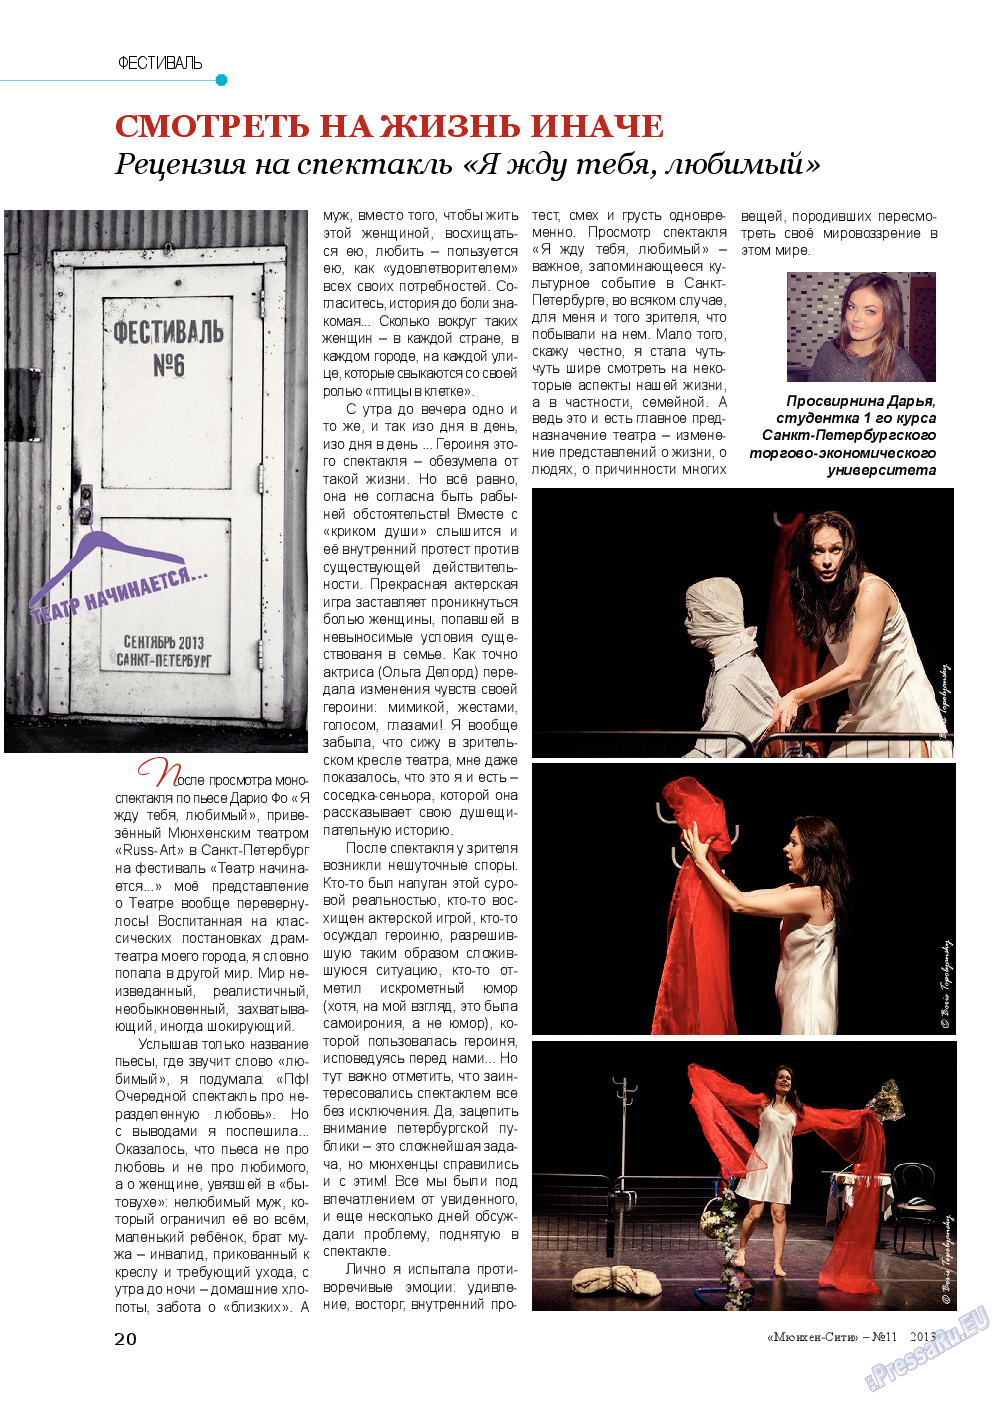 Мюнхен-сити (журнал). 2013 год, номер 11, стр. 20